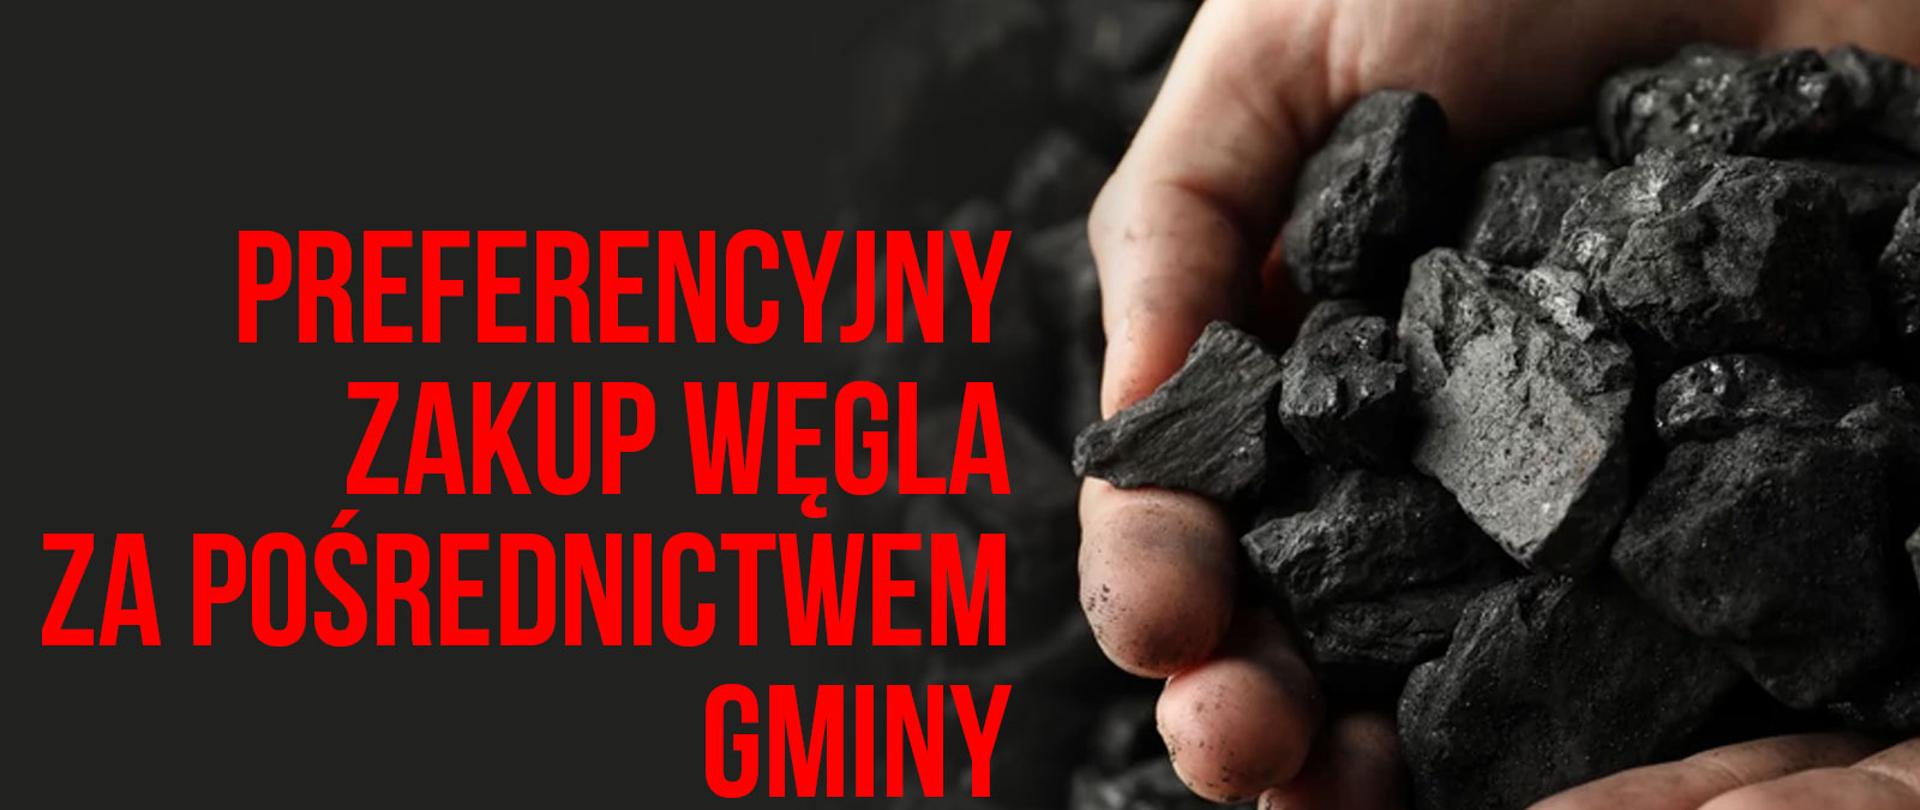 Ogłoszenie dotyczące zbierania wniosków od mieszkańców Gminy Goraj w  sprawie zakupu węgla na preferencyjnych warunkach - Gmina Goraj - Portal  gov.pl